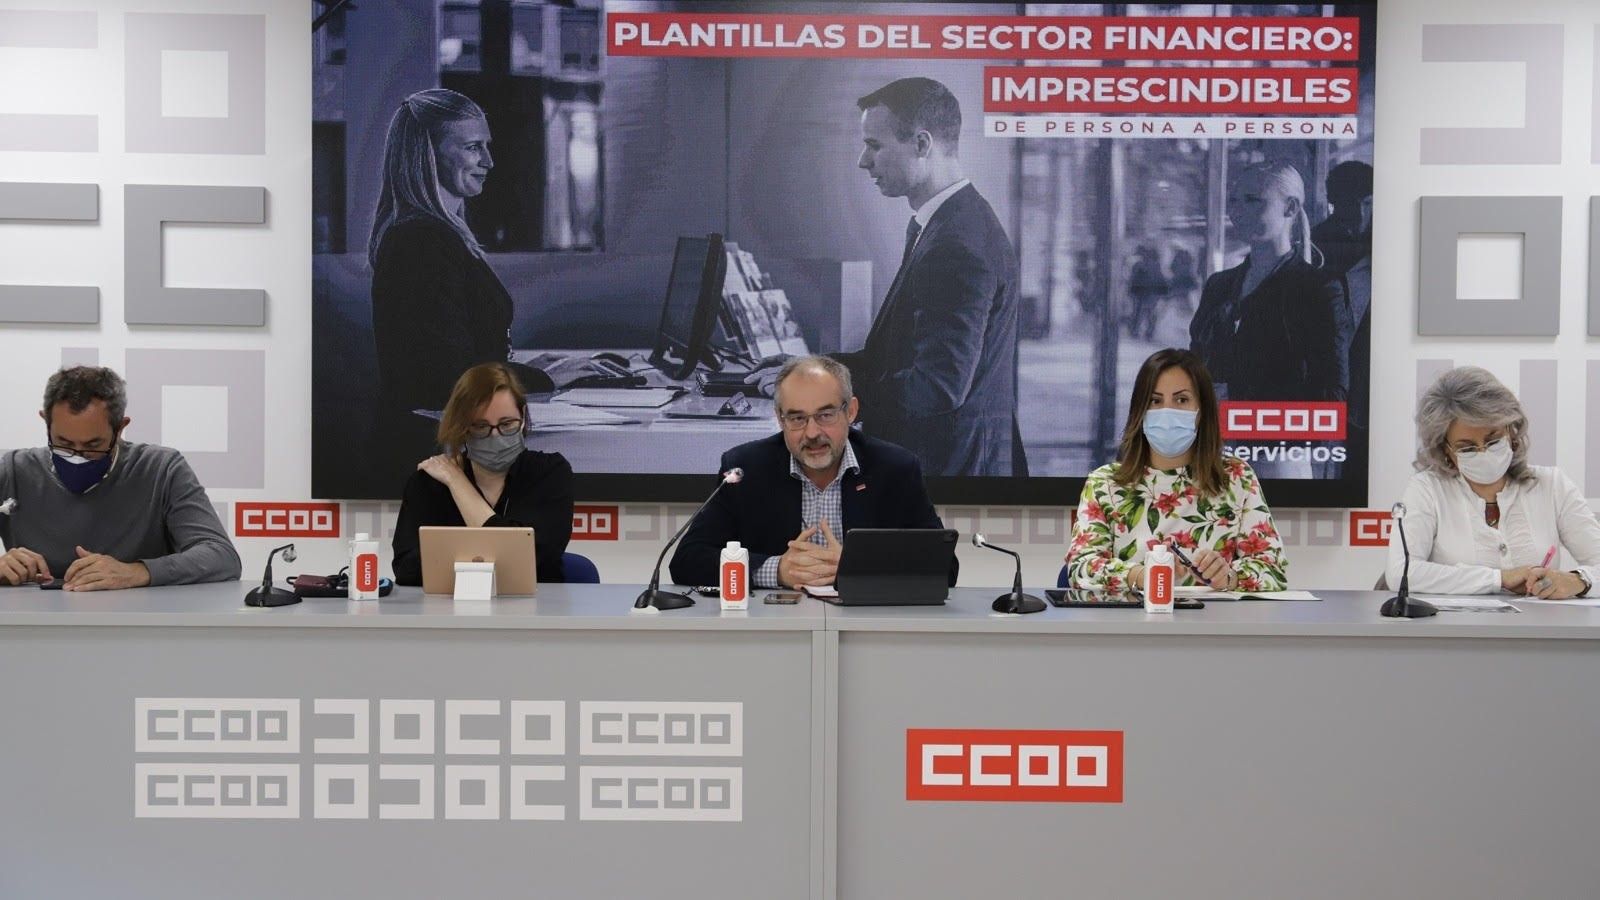 El secretario general de la federación de servicios de CCOO, José María Martínez